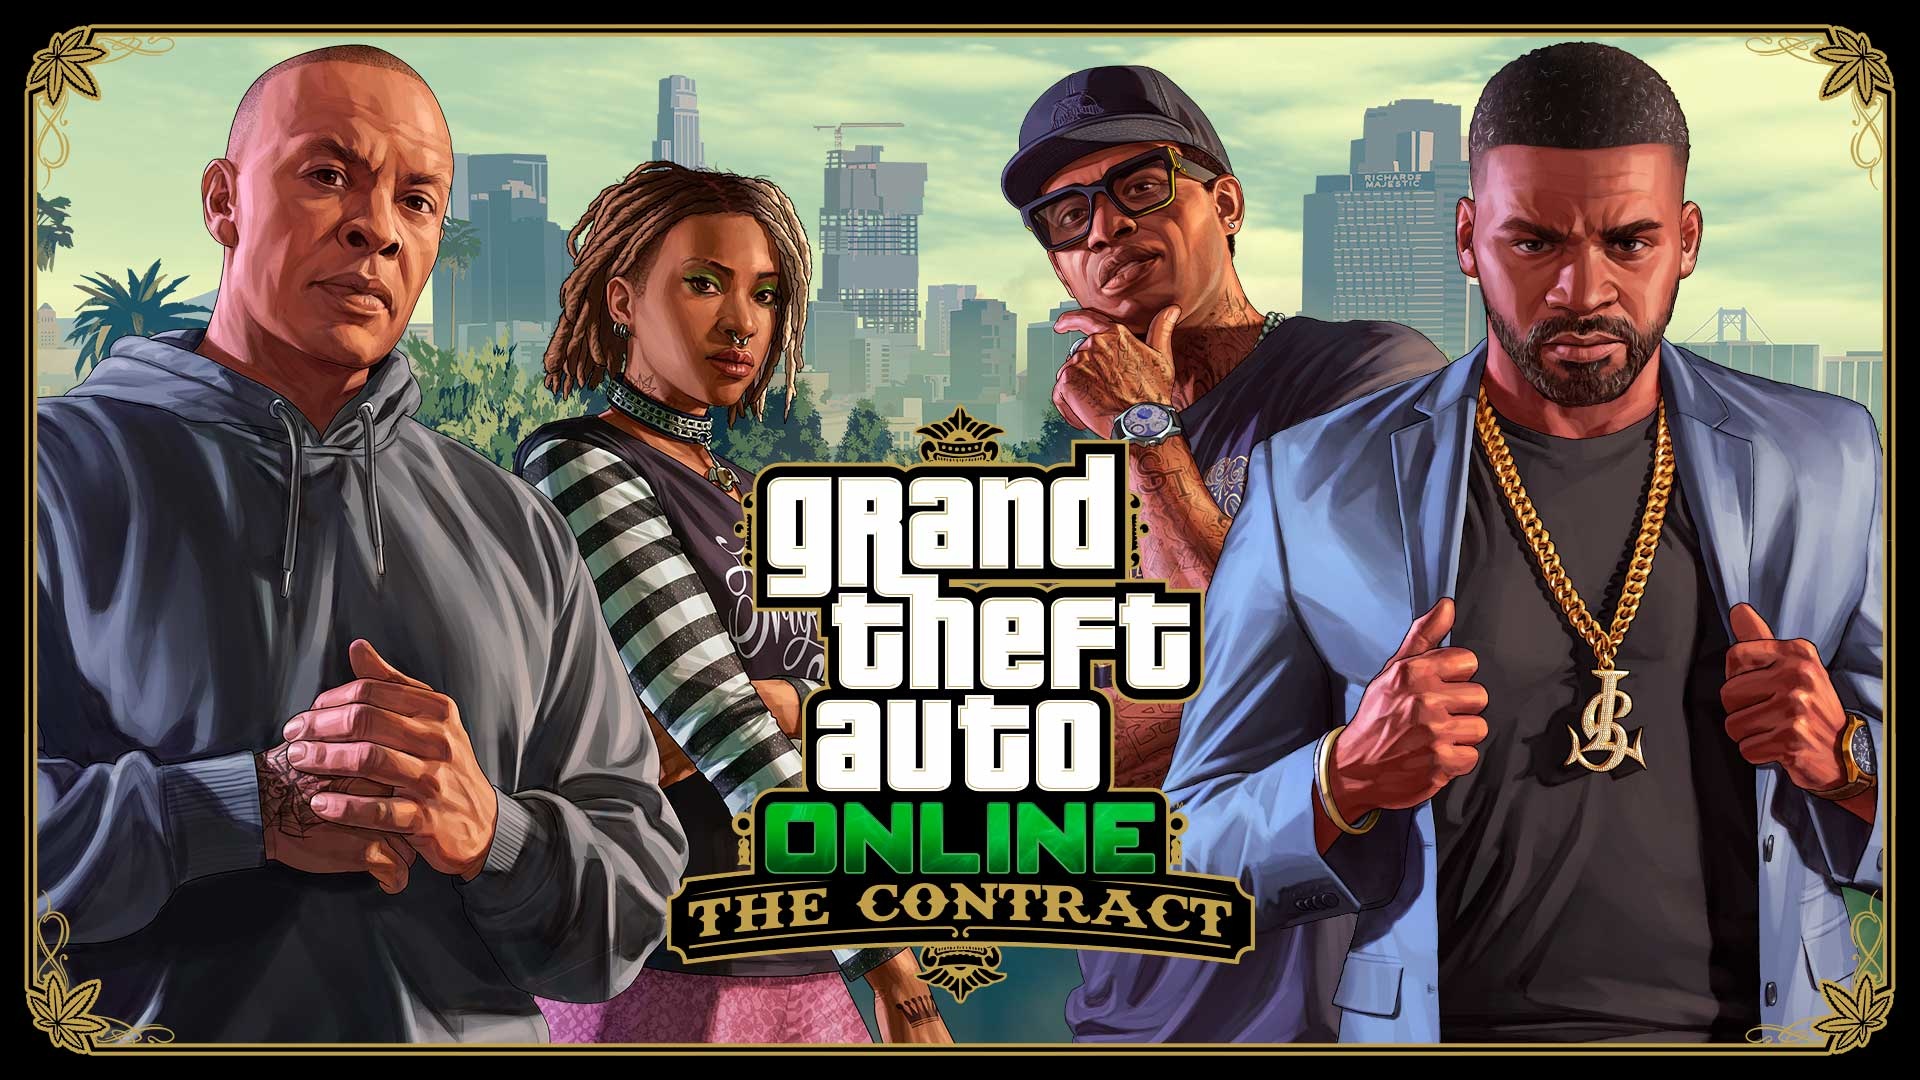  (V aktualizaci The Contract pro GTA Online hrál Dr. Dre hlavní roli. To, že se 50 Cent podílí na podobném projektu společnosti Rockstar, by nebylo až tak nepravděpodobné.